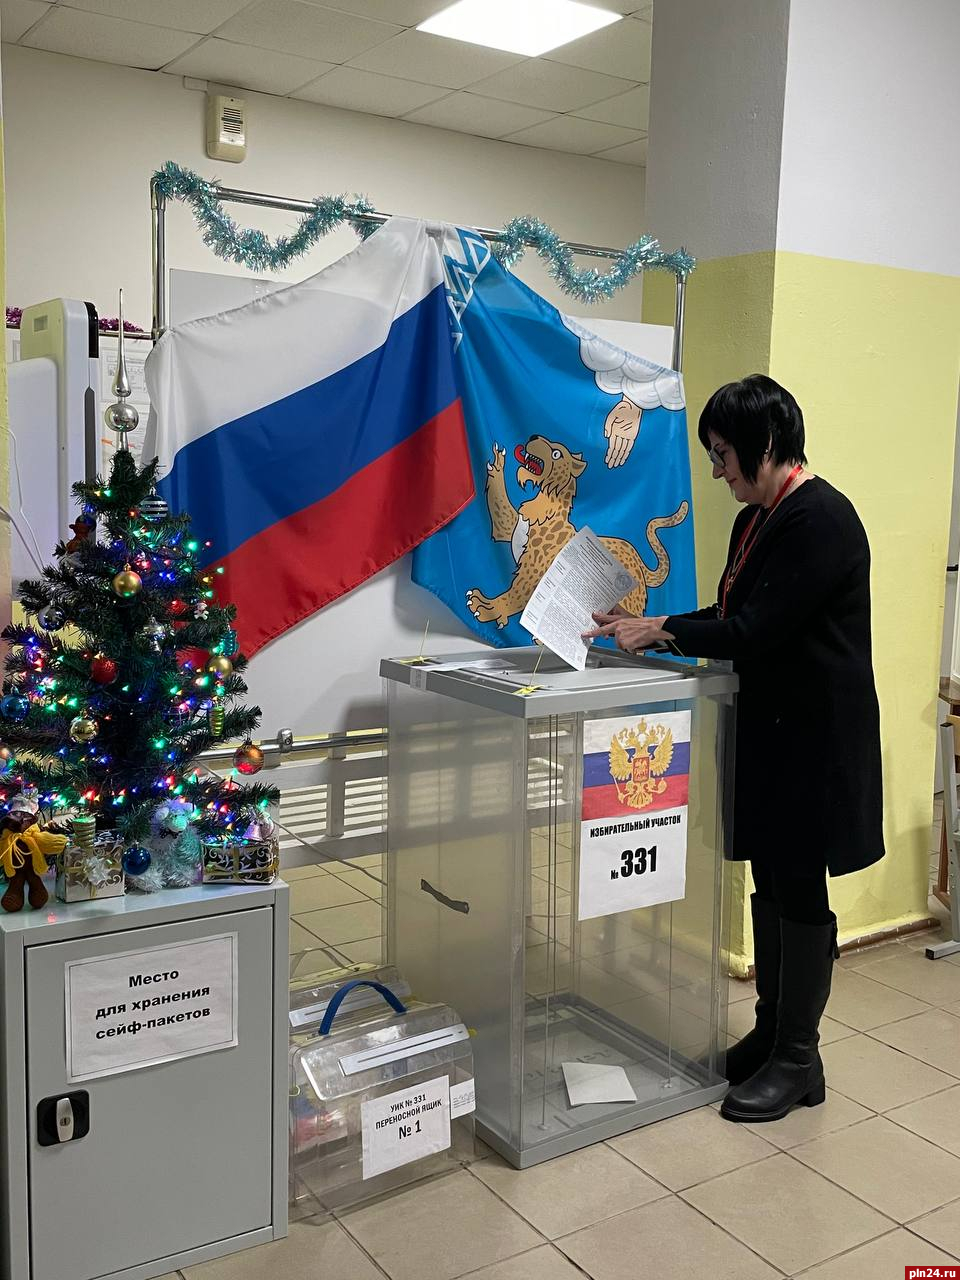 Явка на выборах главы Пушкиногорского района на 18.00 составила более 33%